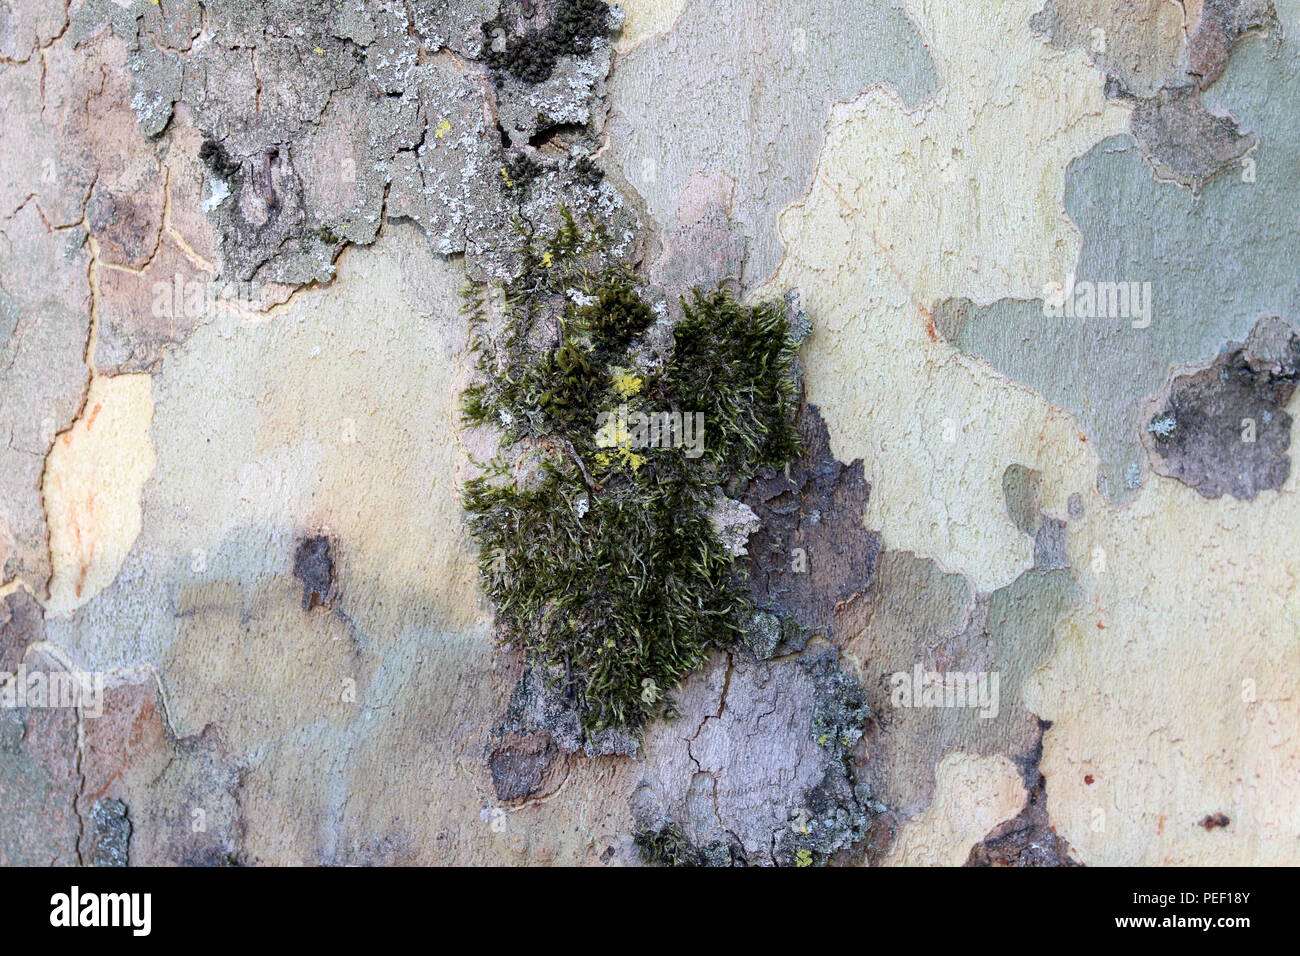 Grüne Rinde Textur den Baumstamm in leuchtenden grünen Wald in der Nähe von Baumrinde Textur Stockfoto